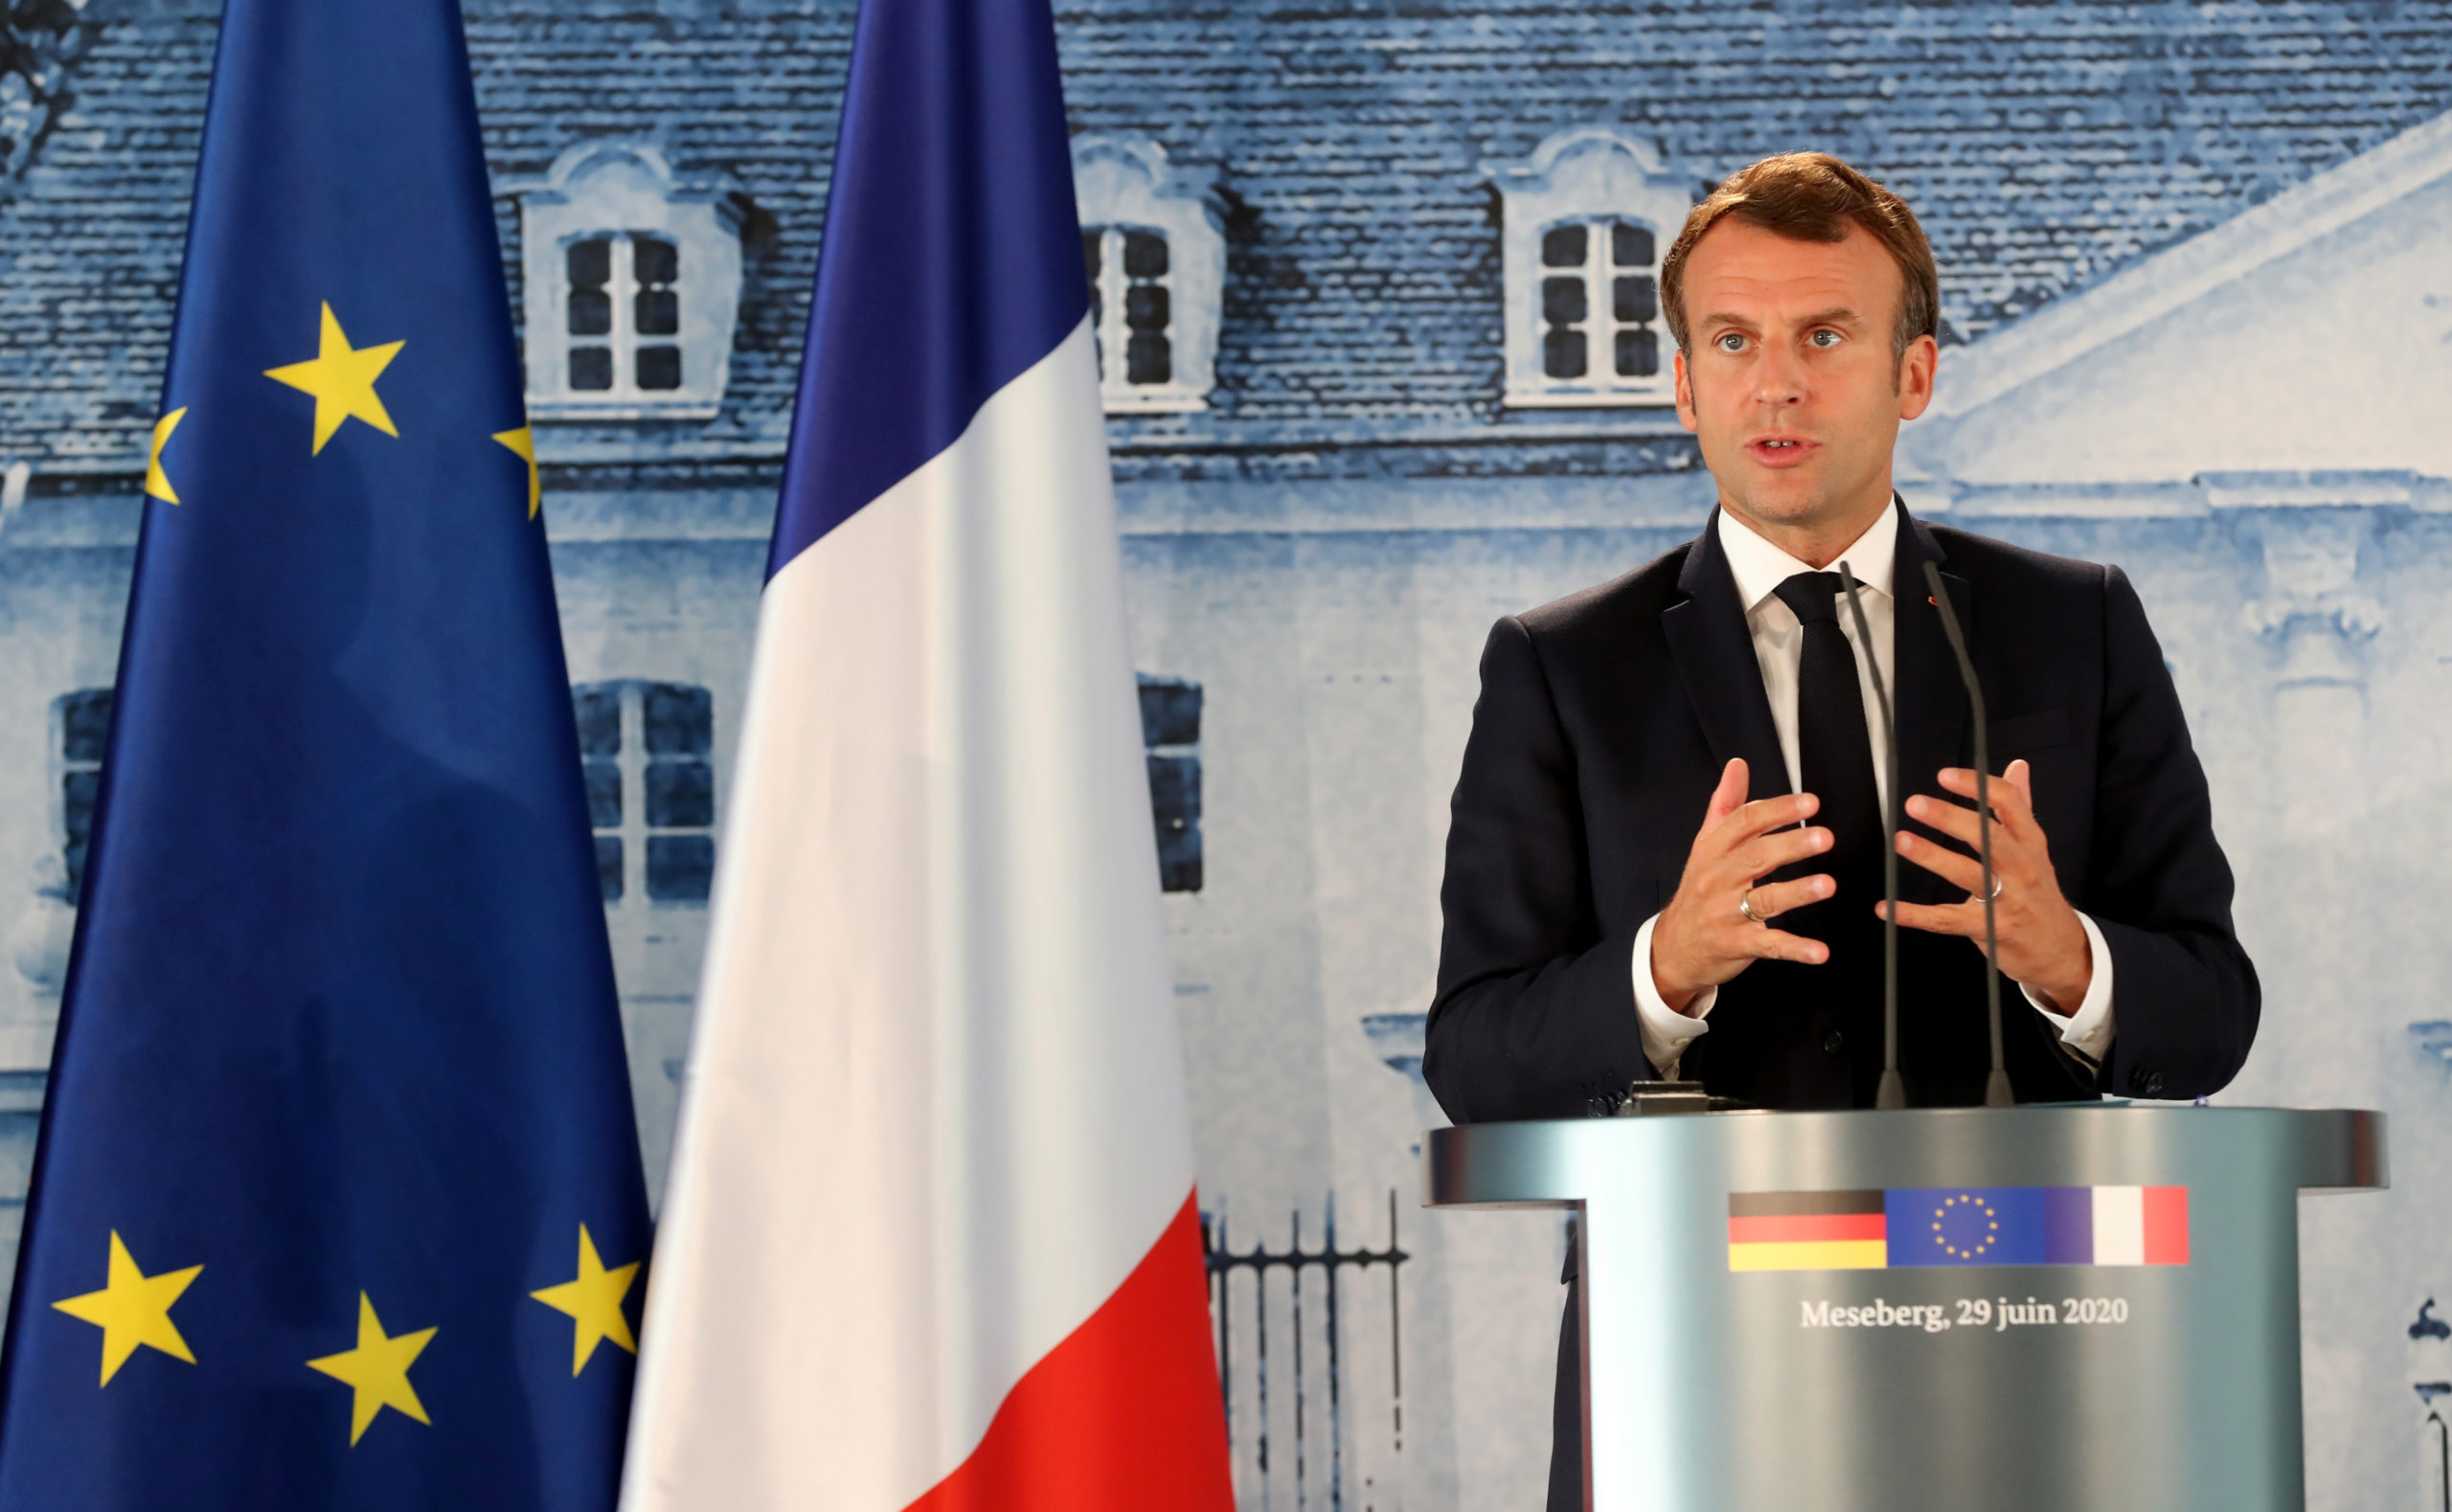 Municipales: Macron ne veut pas tirer de conclusions "excessives"